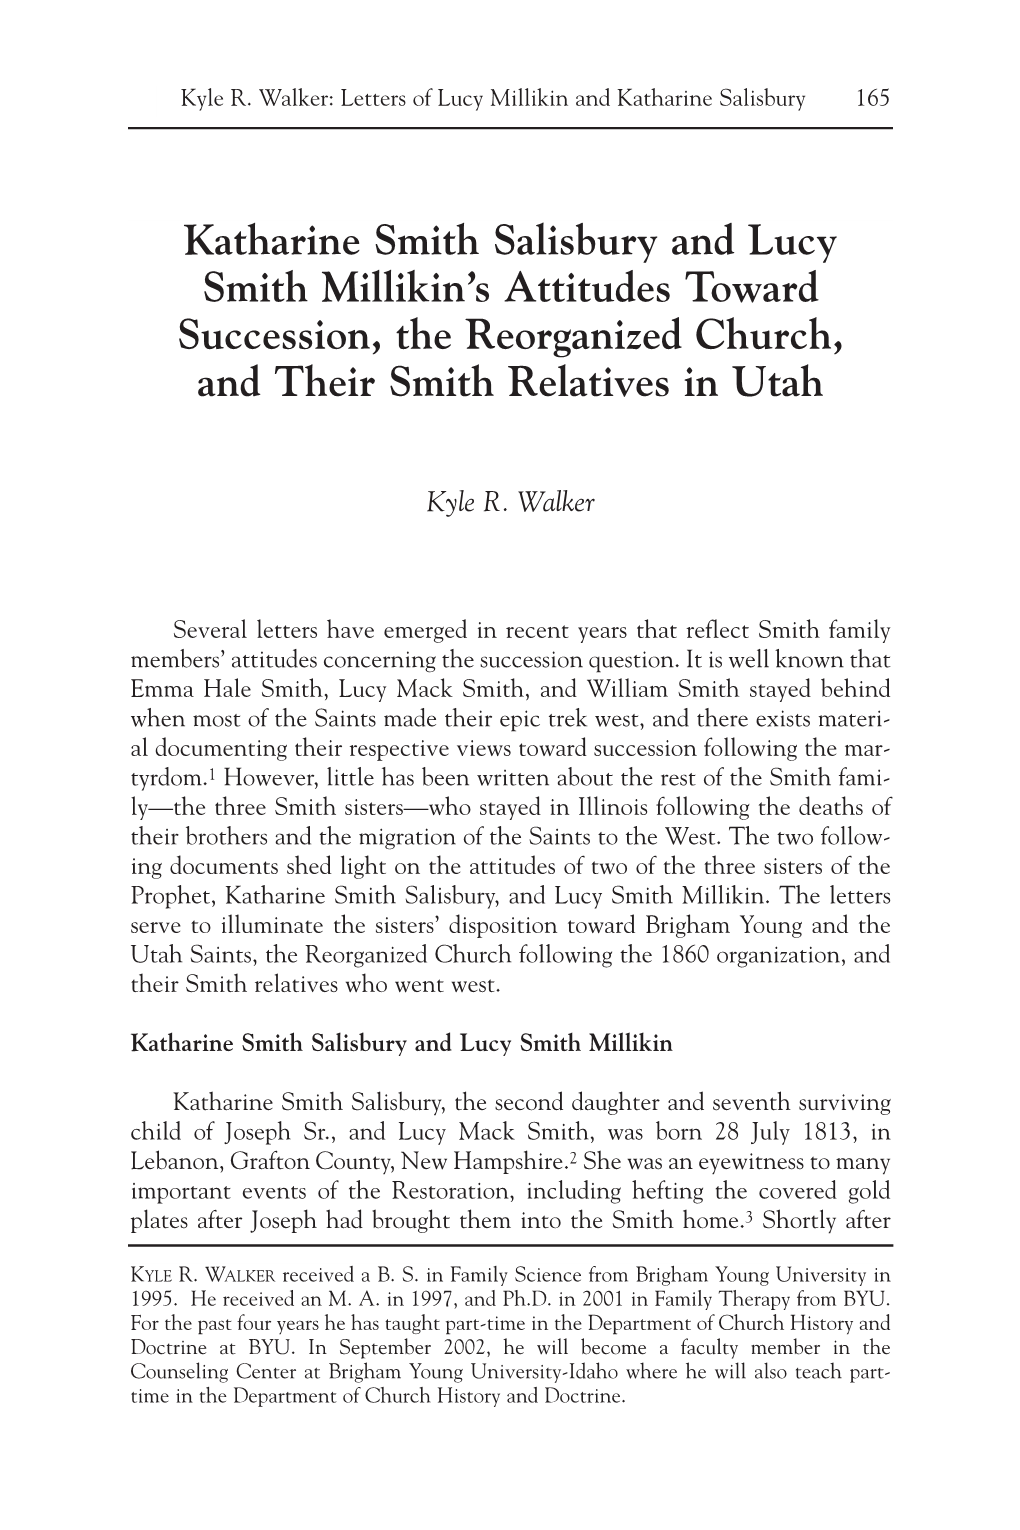 Katharine Smith Salisbury and Lucy Smith Millikin's Attitudes Toward